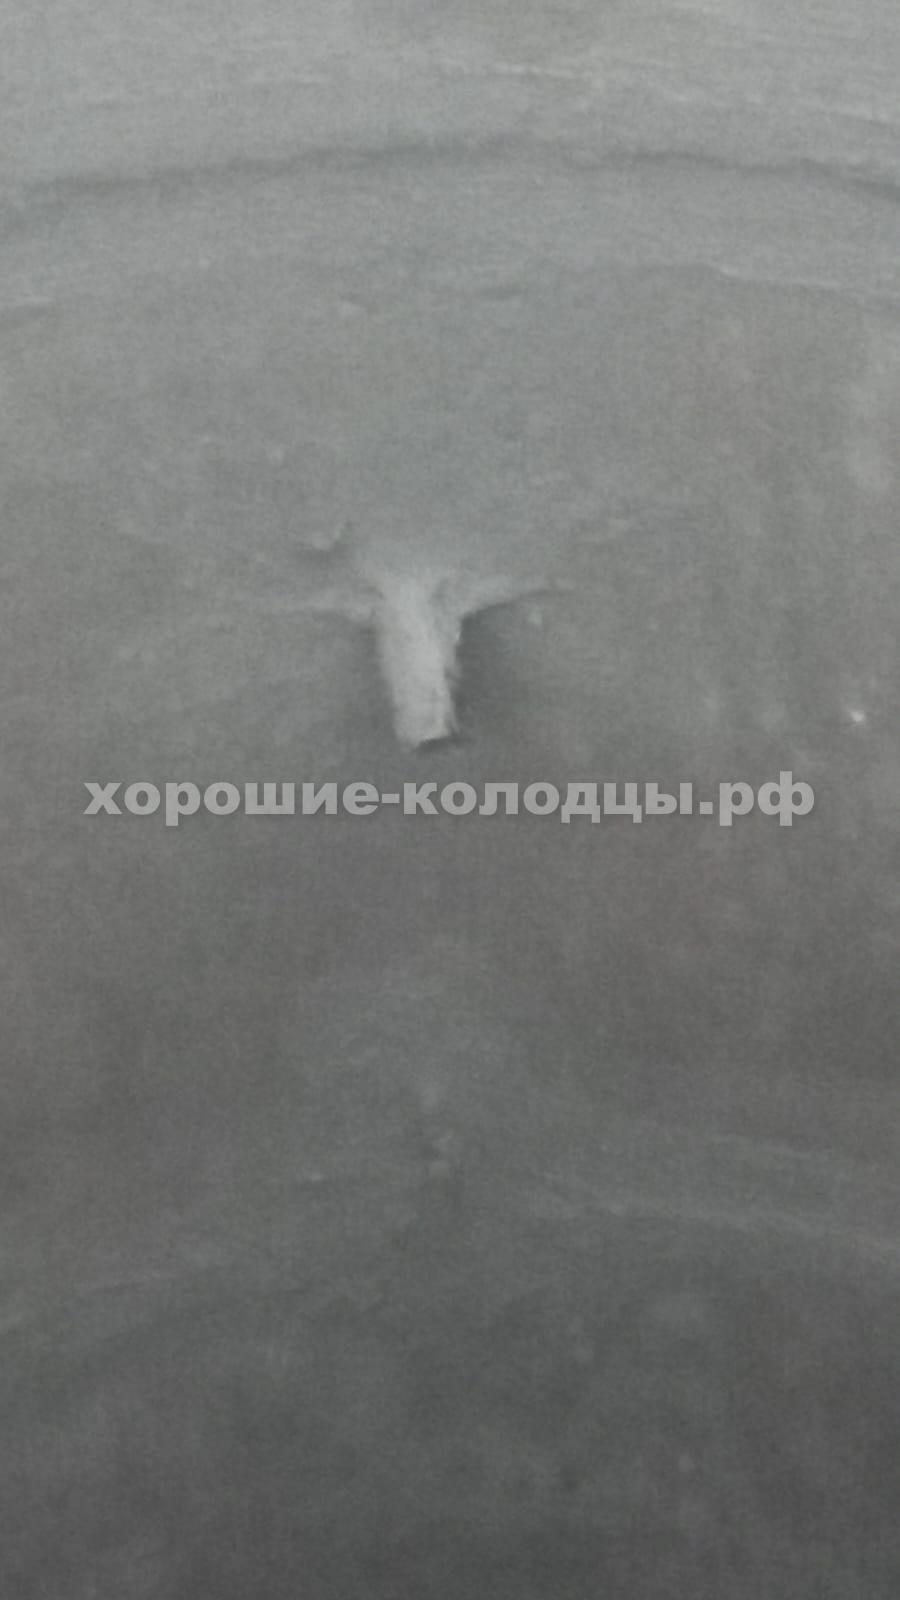 Септик переливной 8 колец в Московская область, Истринский район, д. Кашино